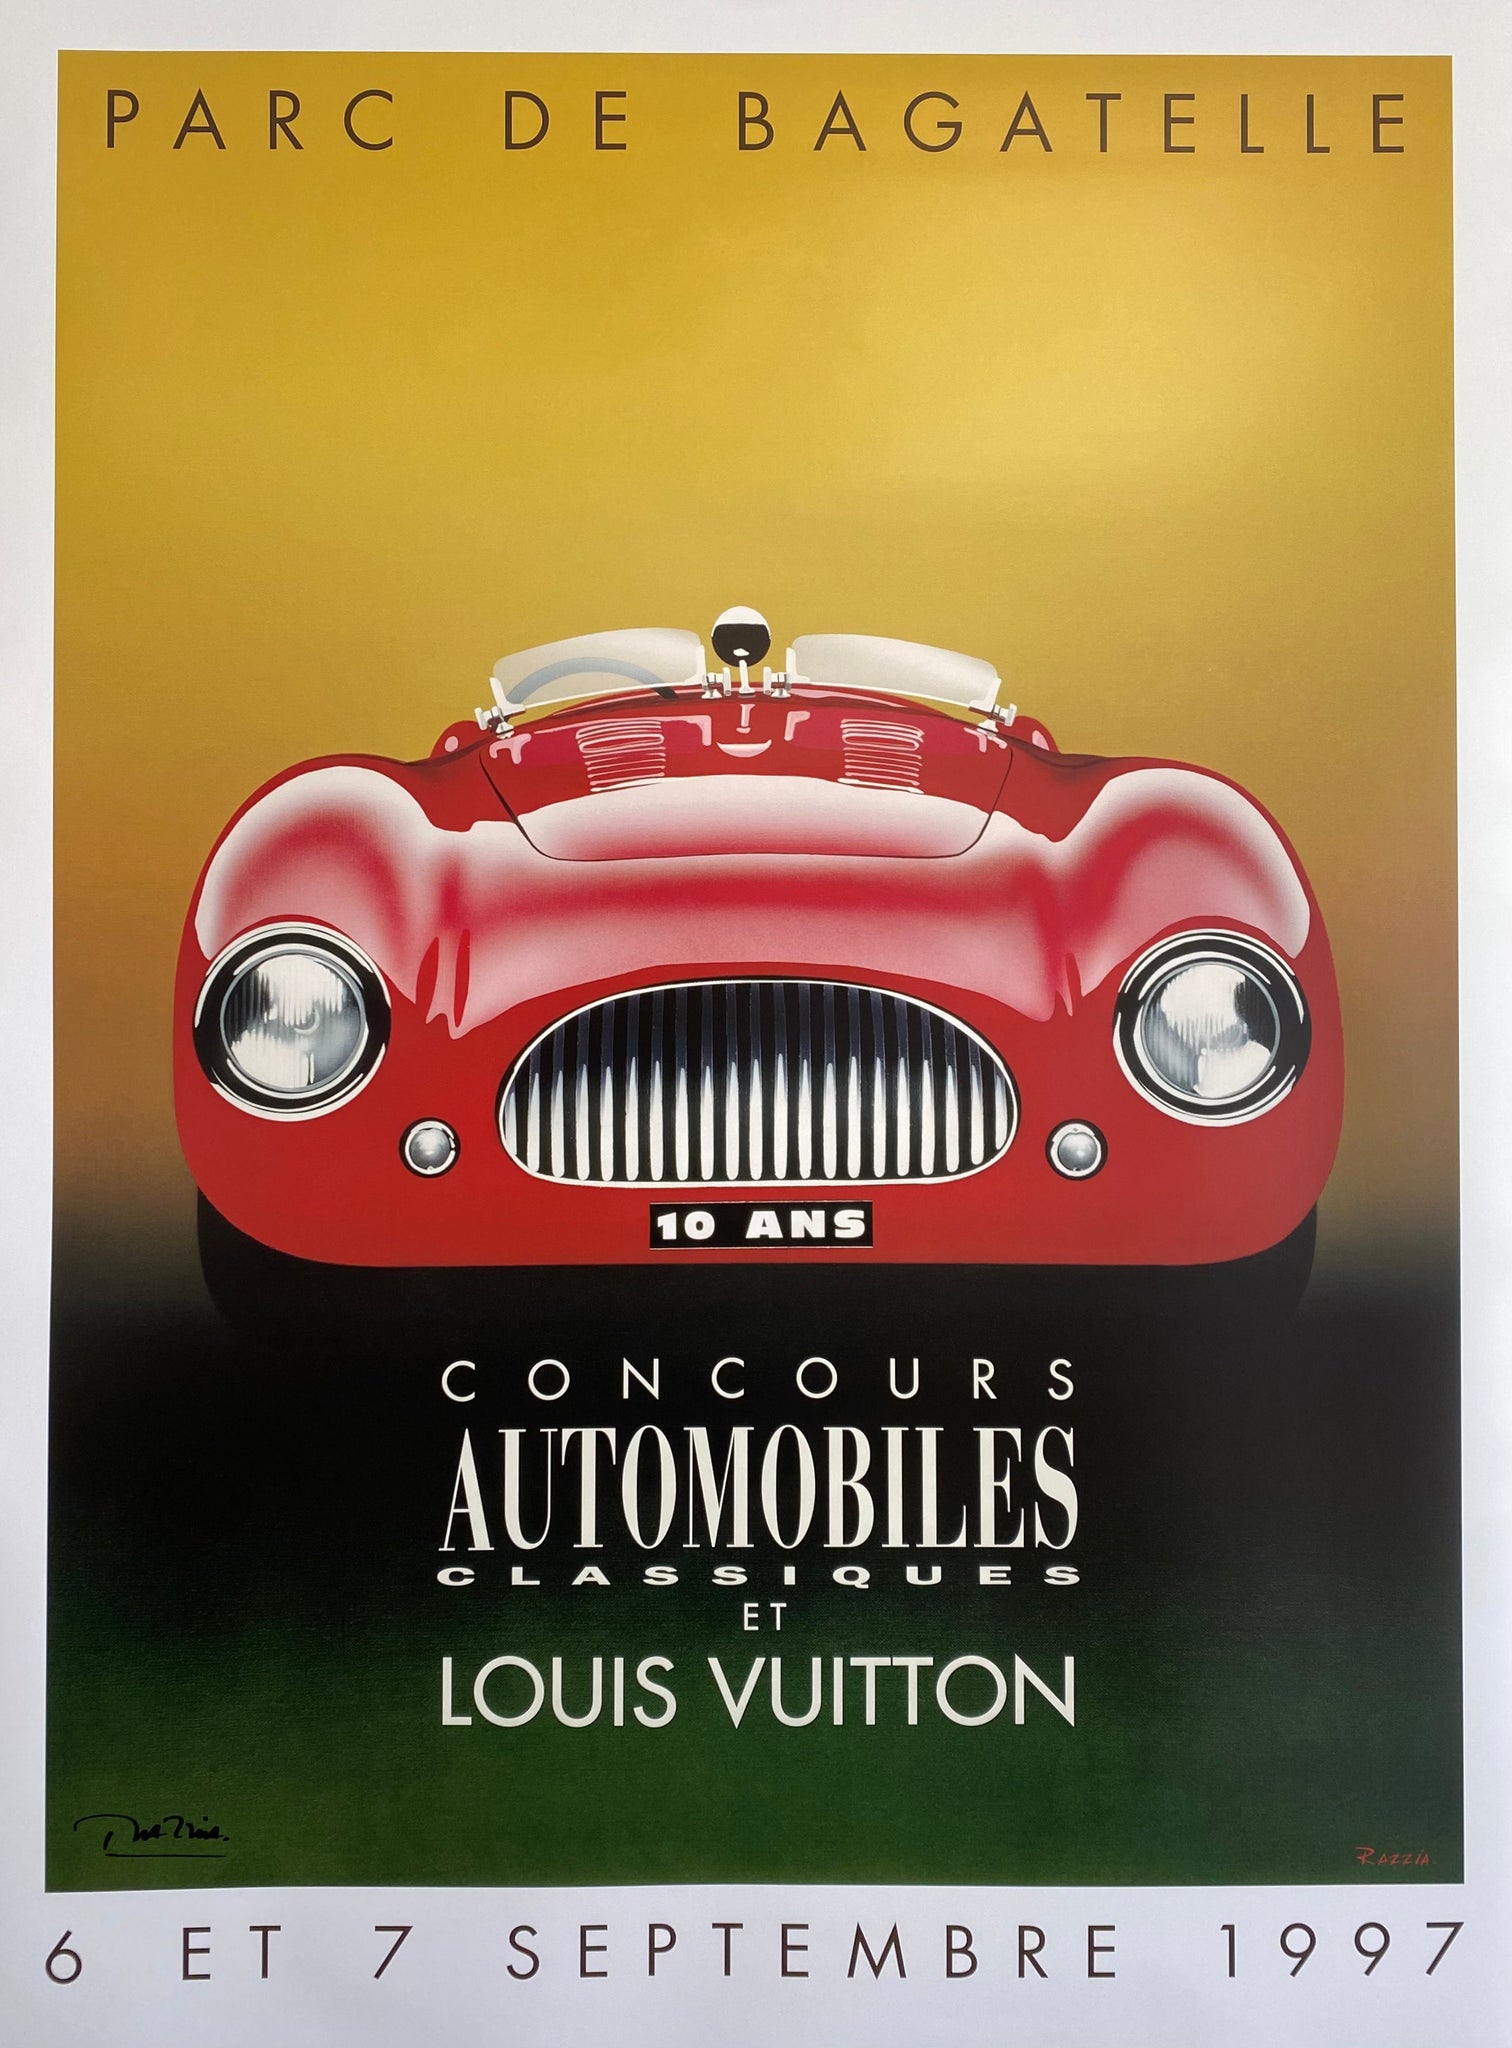 Affiche Parc de Bagatelle Concours Automobiles Classiques et Louis Vuitton Par Razzia, 1997